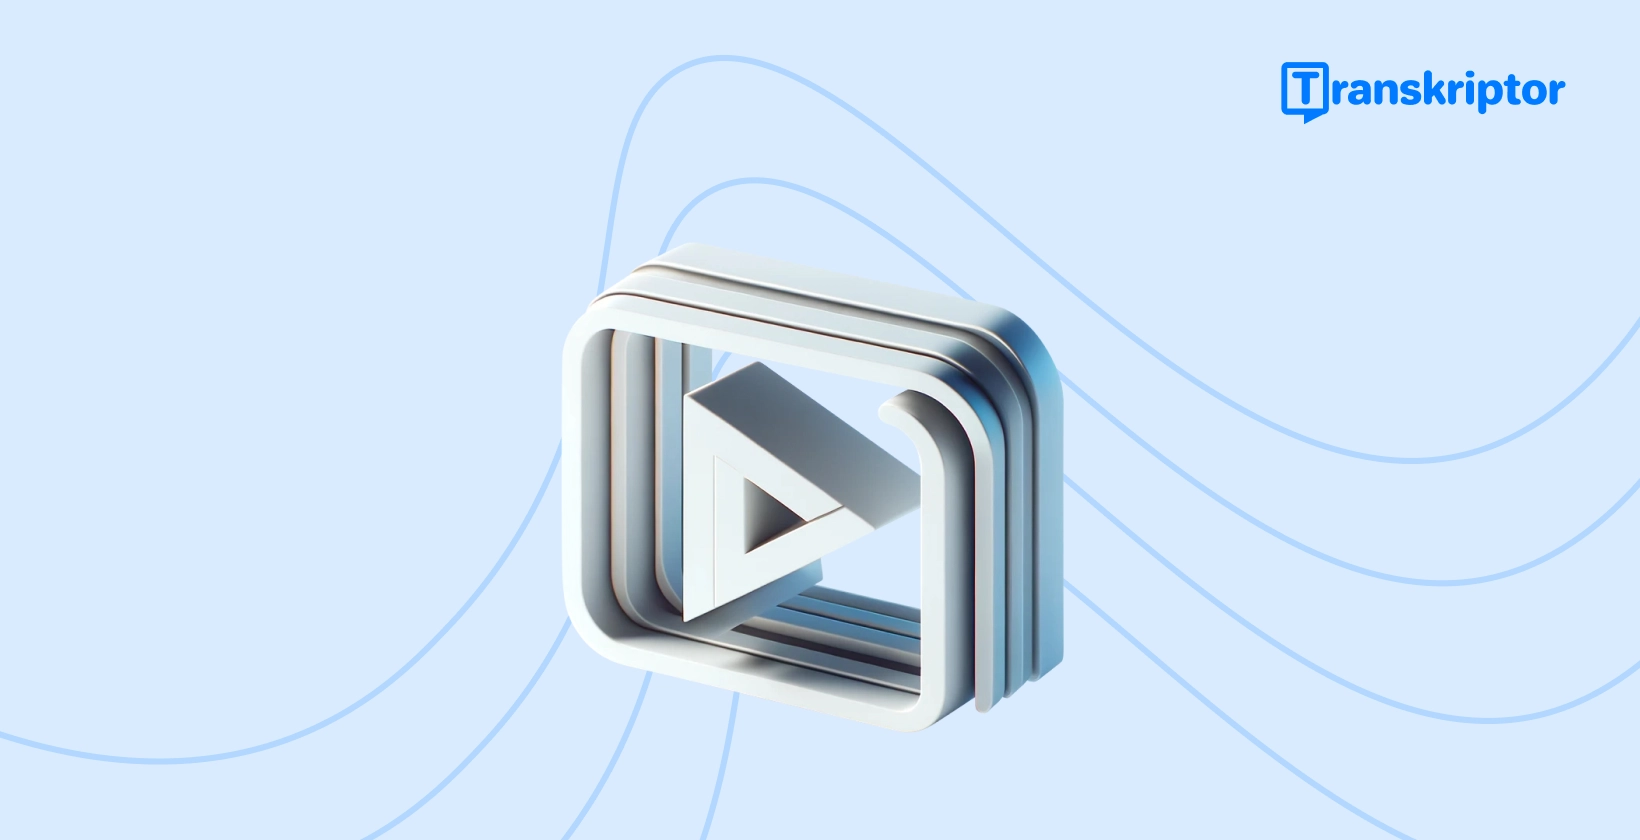 Trinn-for-trinn-opplæringsbanner om å legge til bildetekster til videoer, med et avspillingsknappikon som symboliserer videoredigering.